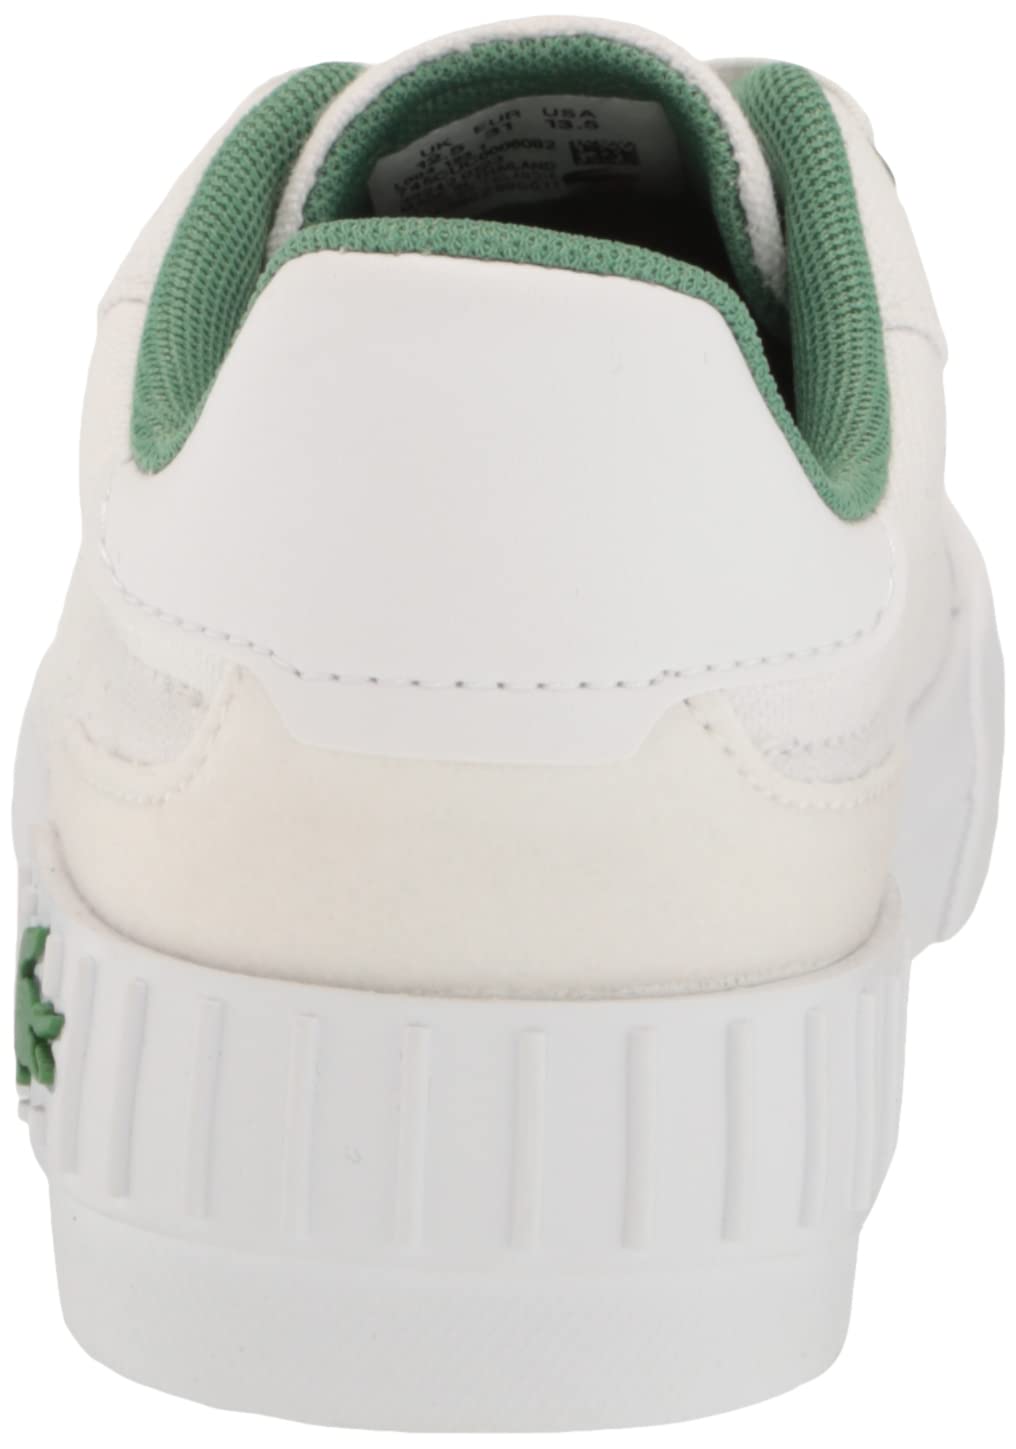 Lacoste Kids L004 Sneaker, White/Green, 7.5 US Unisex Toddler